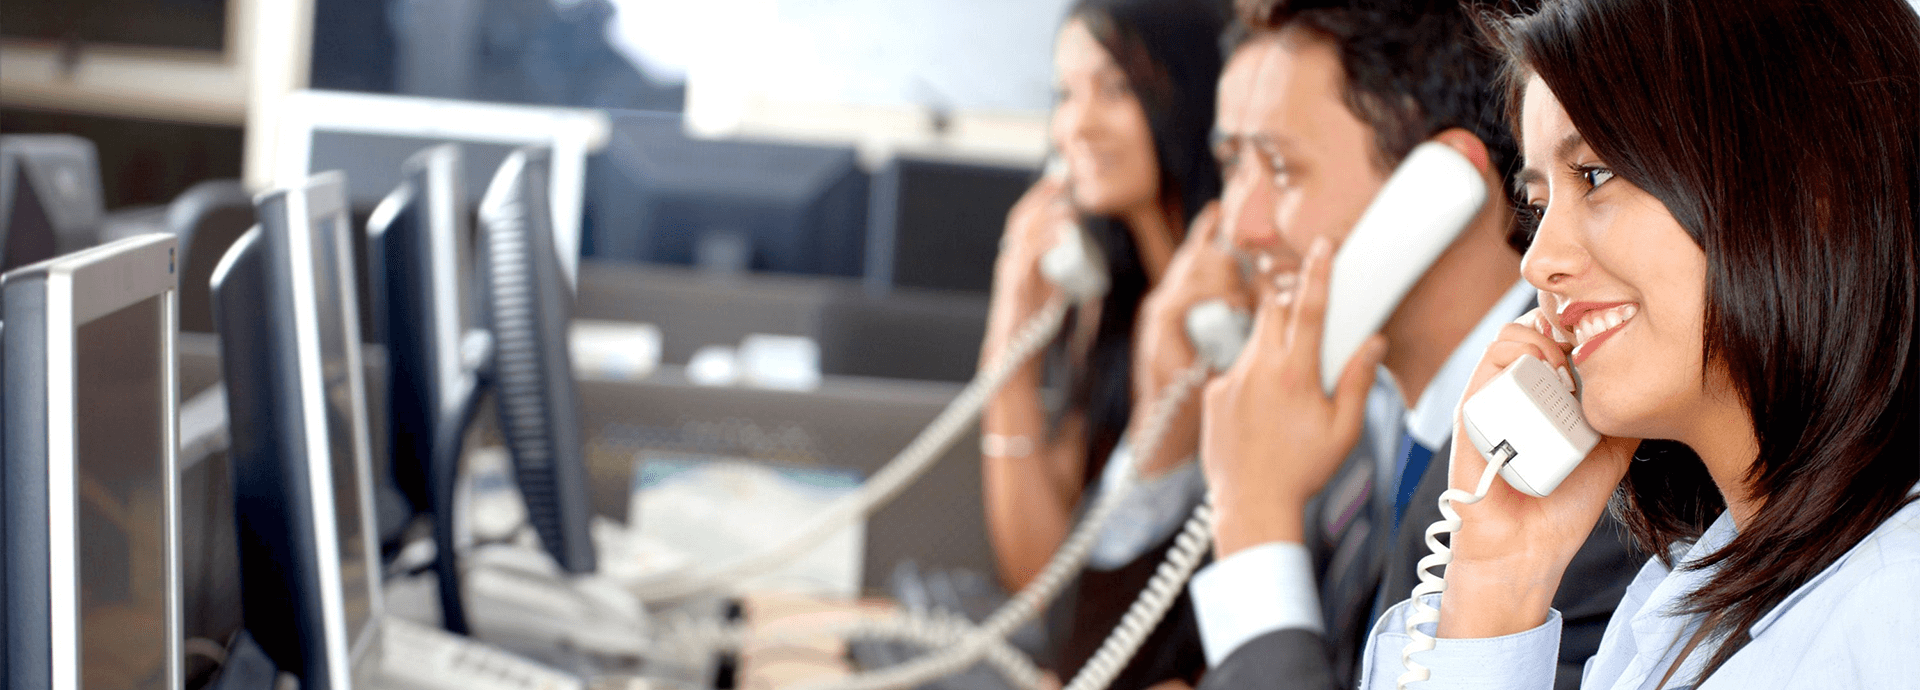 10 lý do các doanh nghiệp lựa chọn tổng đài VOIP